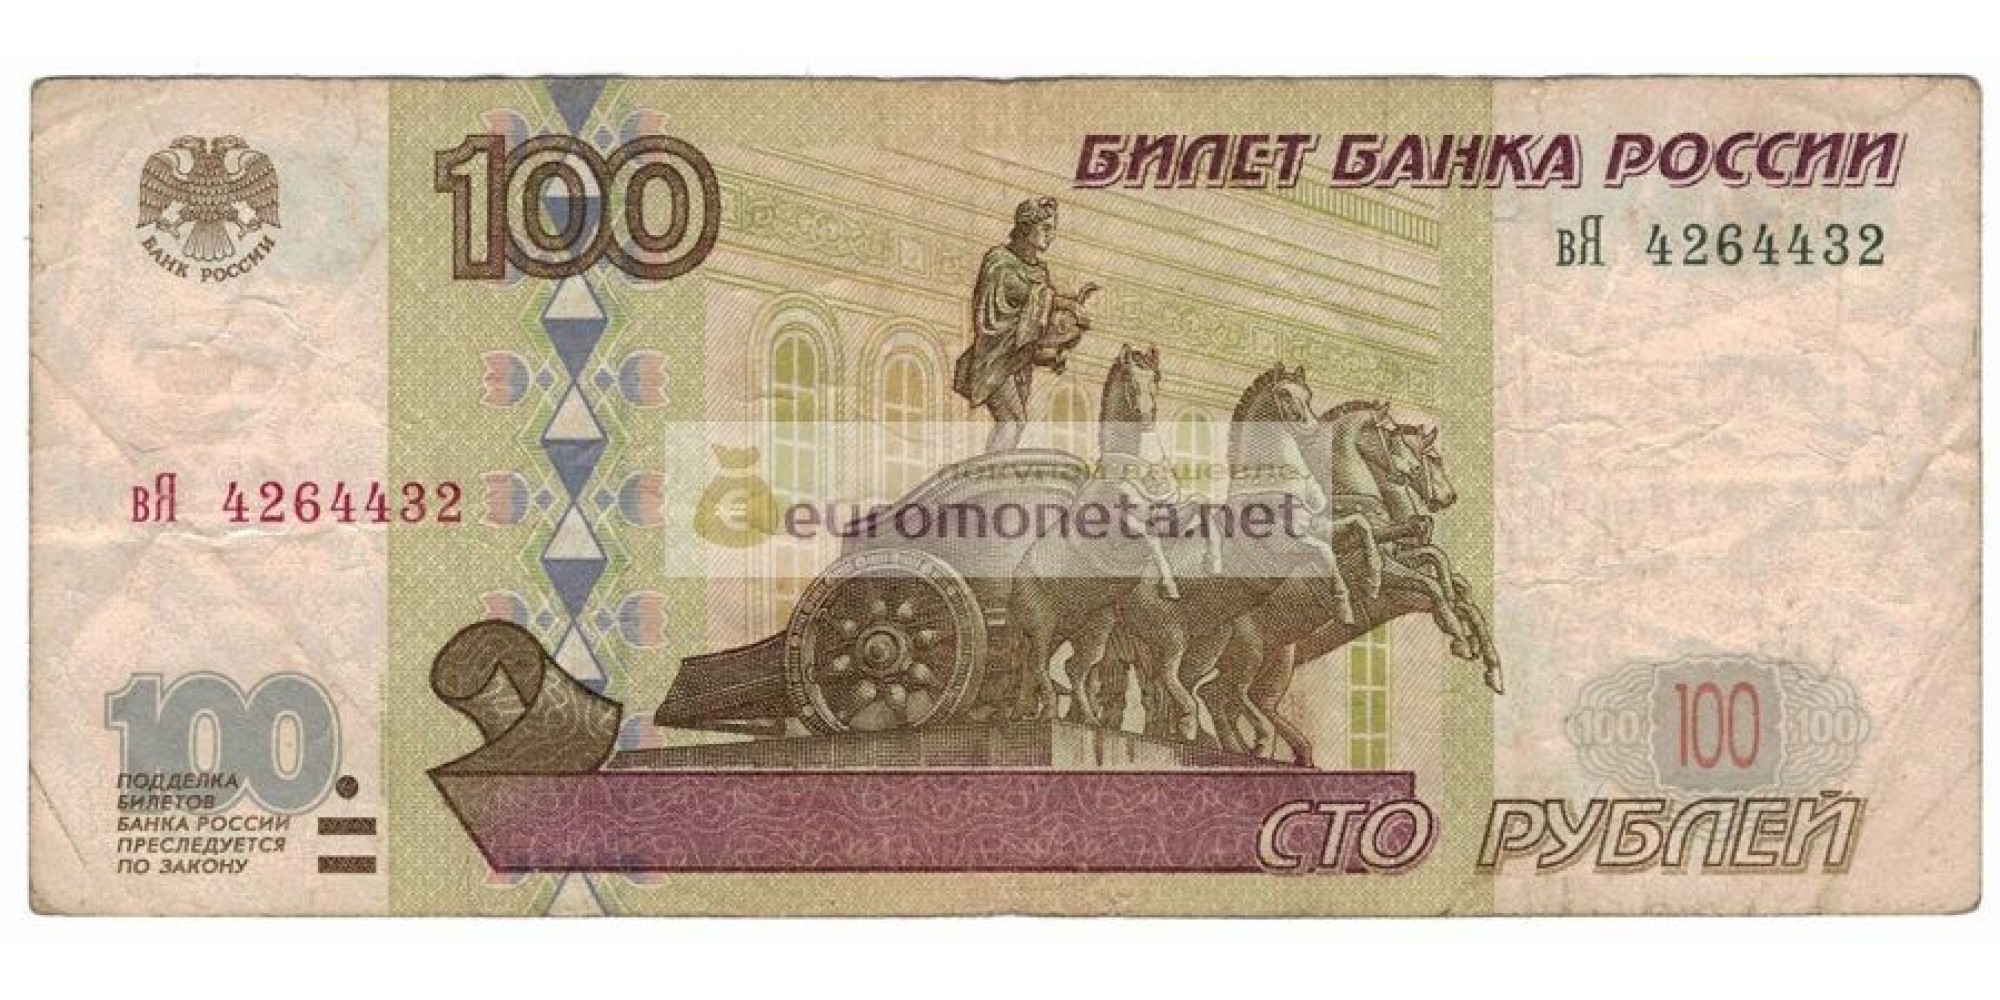 Россия 100 рублей 1997 год модификация 2001 год серия вЯ 4264432